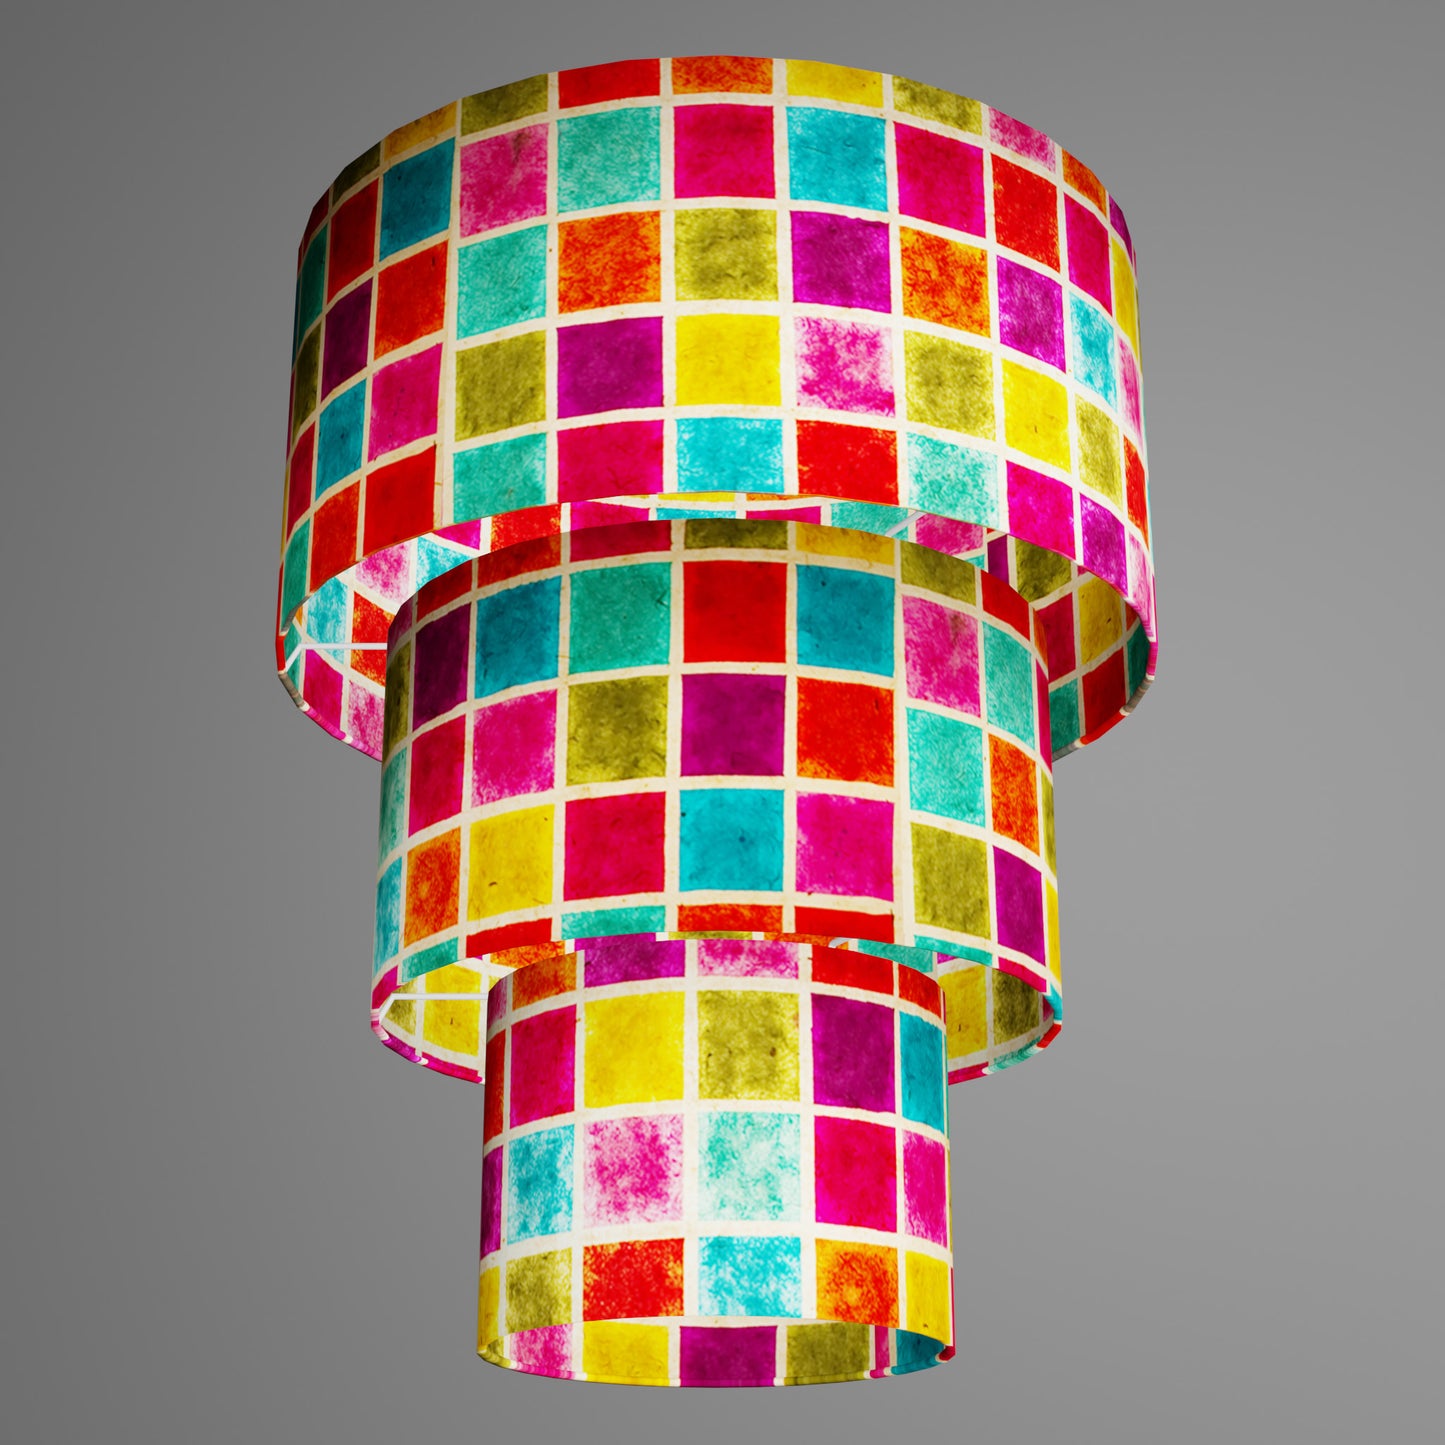 3 Tier Lamp Shade - P01 - Batik Multi Square, 40cm x 20cm, 30cm x 17.5cm & 20cm x 15cm